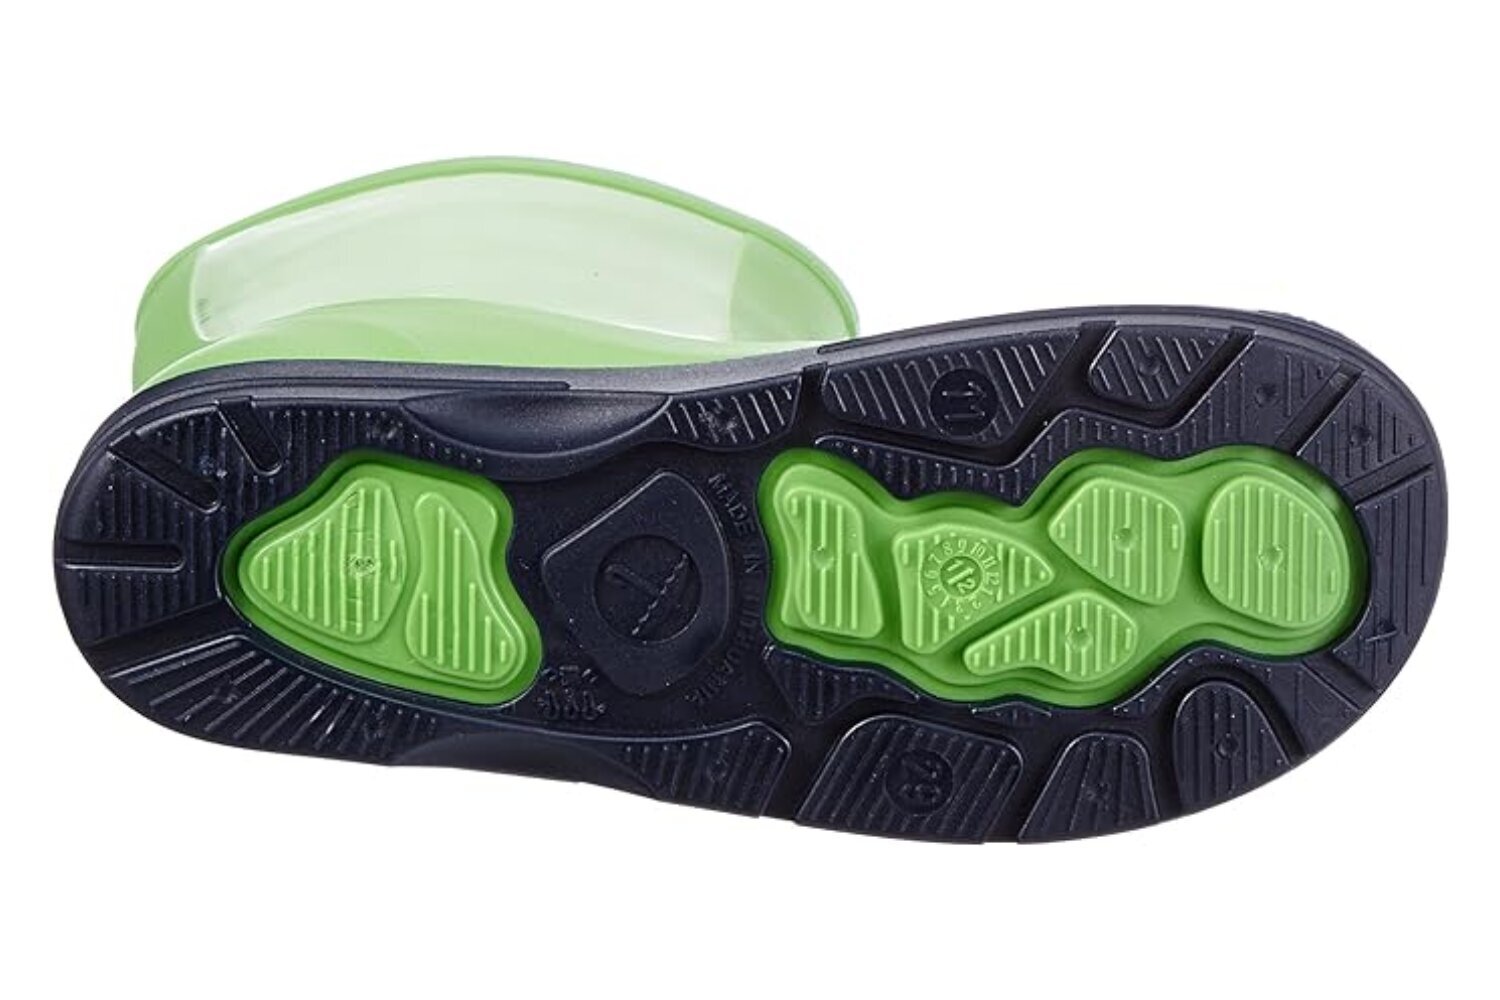 Guminiai batai berniukams Beck 486 APFEL, žali kaina ir informacija | Guminiai batai vaikams | pigu.lt